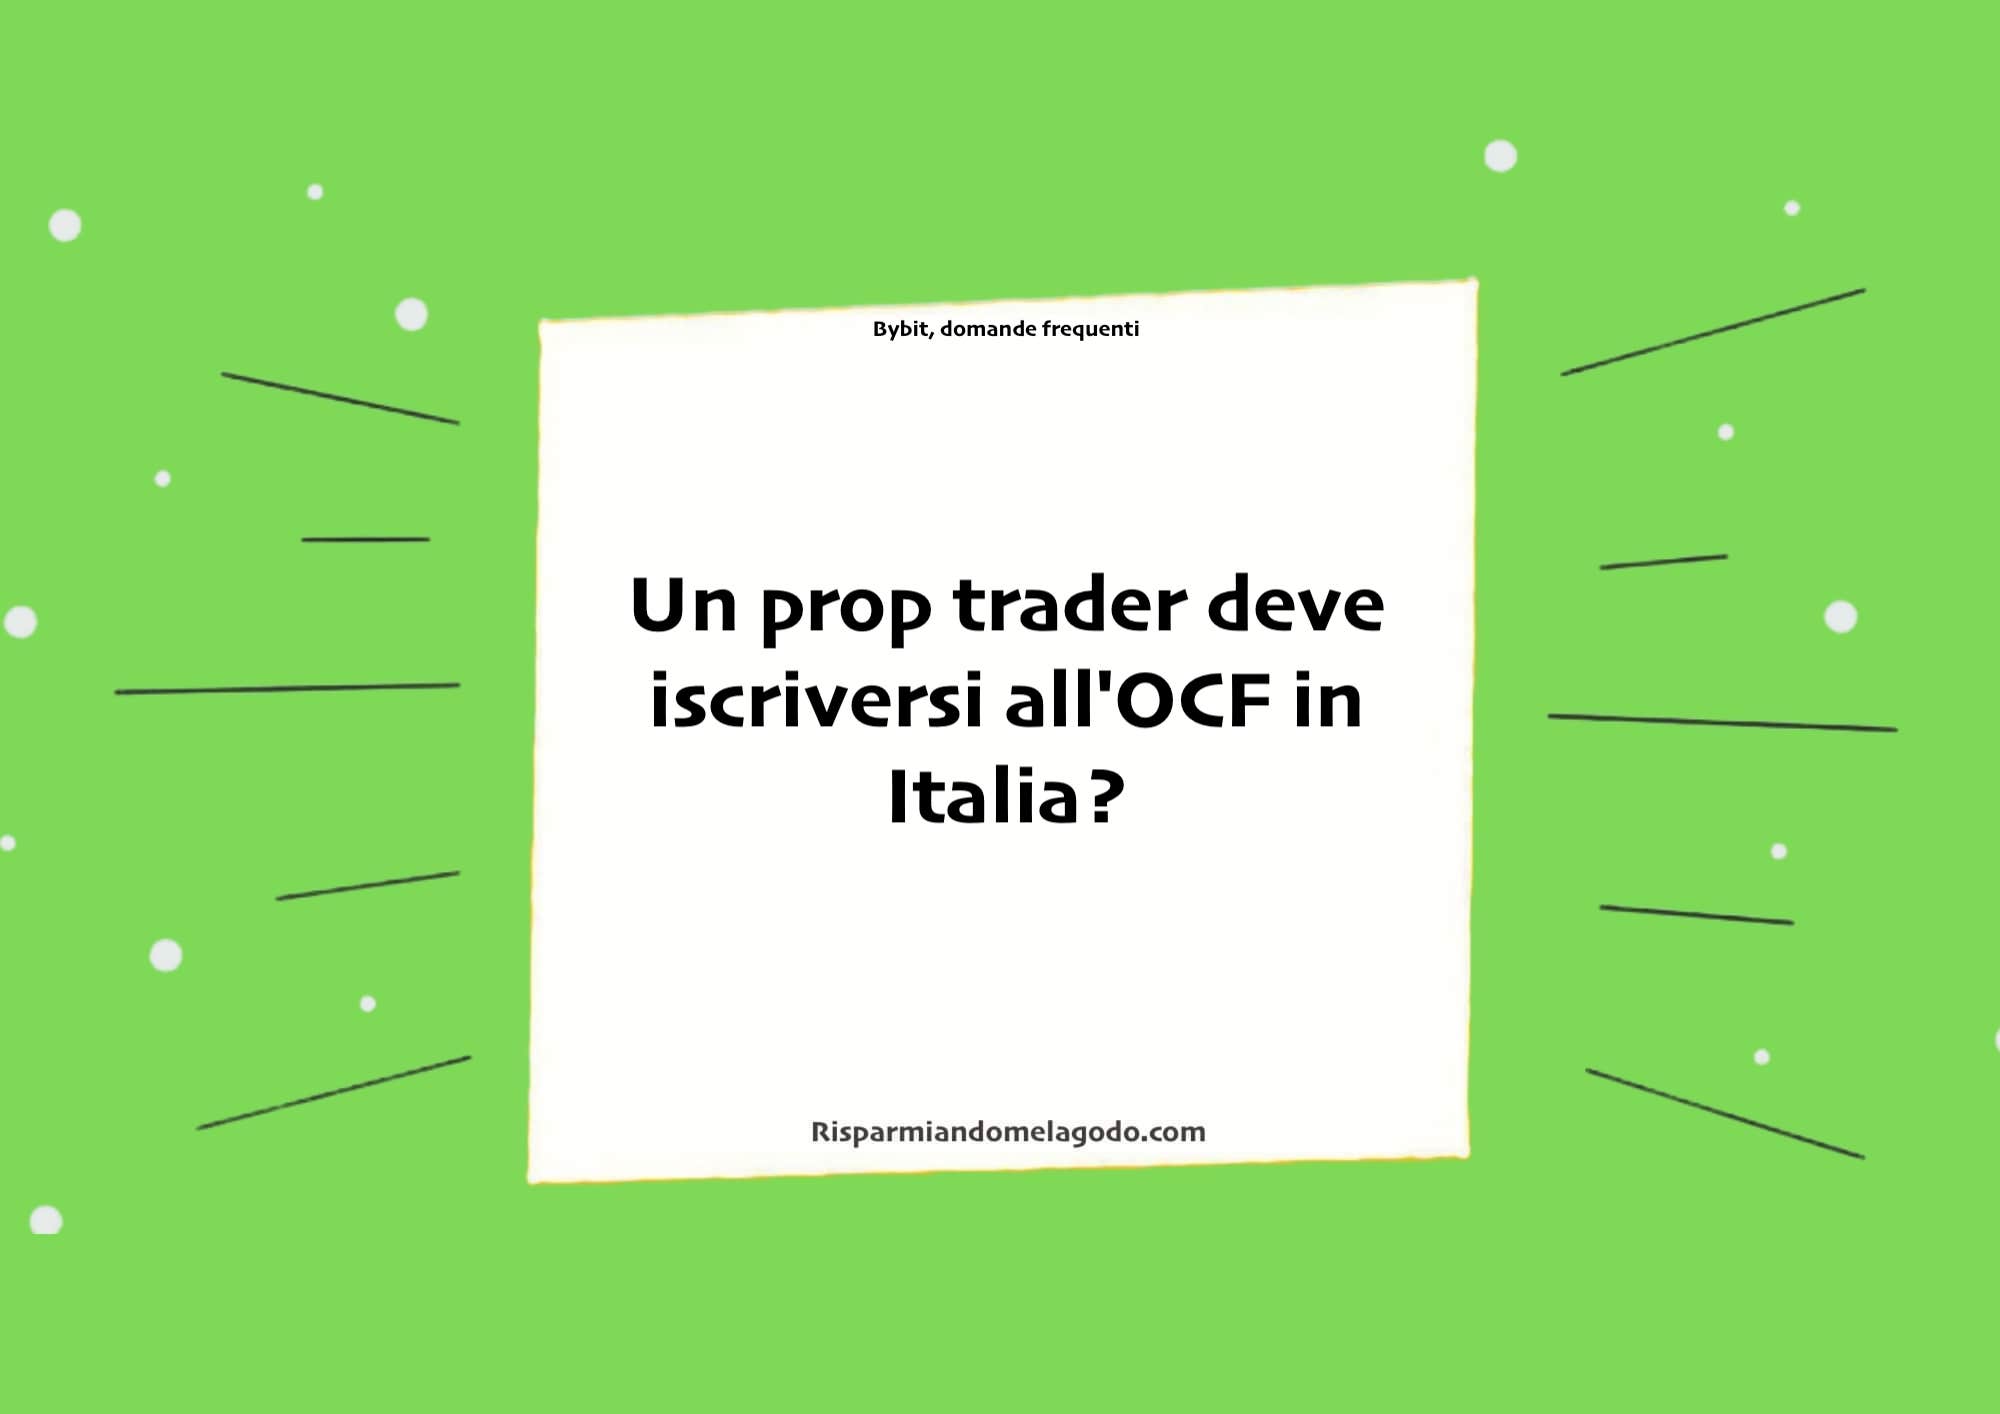 Un prop trader deve iscriversi all'OCF in Italia?